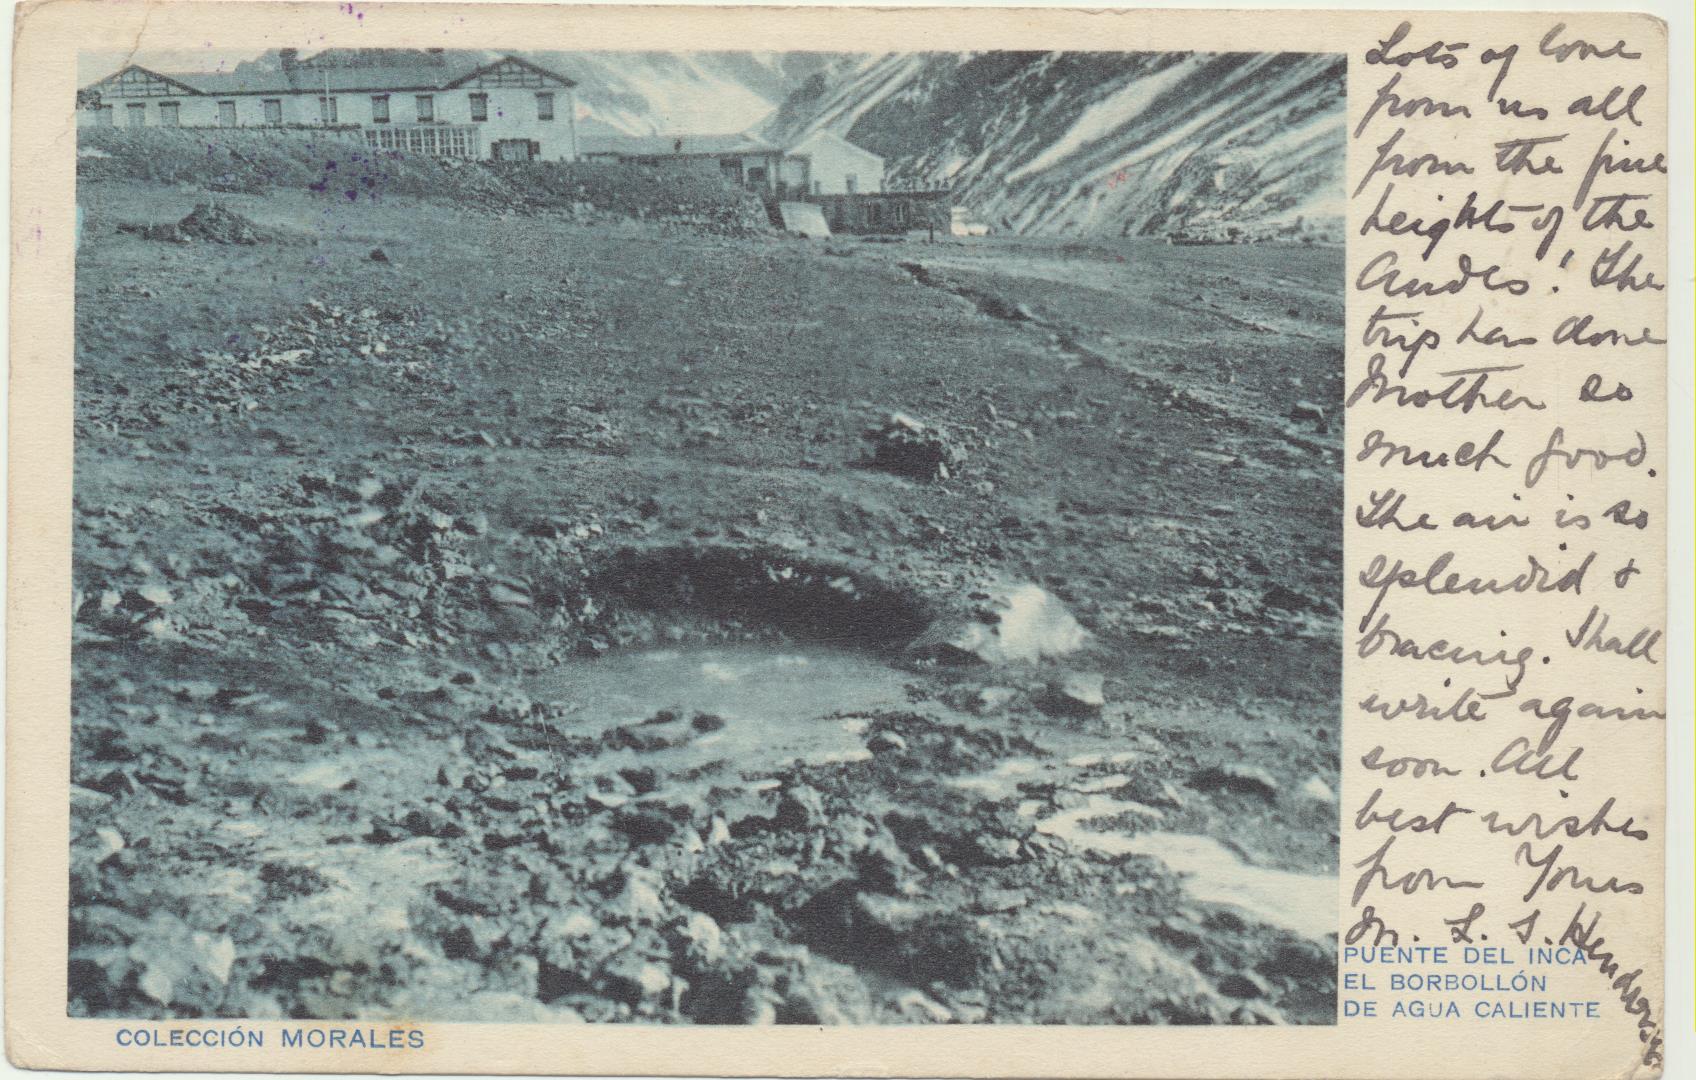 Argentina. Postal. Puente del Inca, El Borbollón de Agua Caliente. Franqueado y fechado el 8-marzo-1918